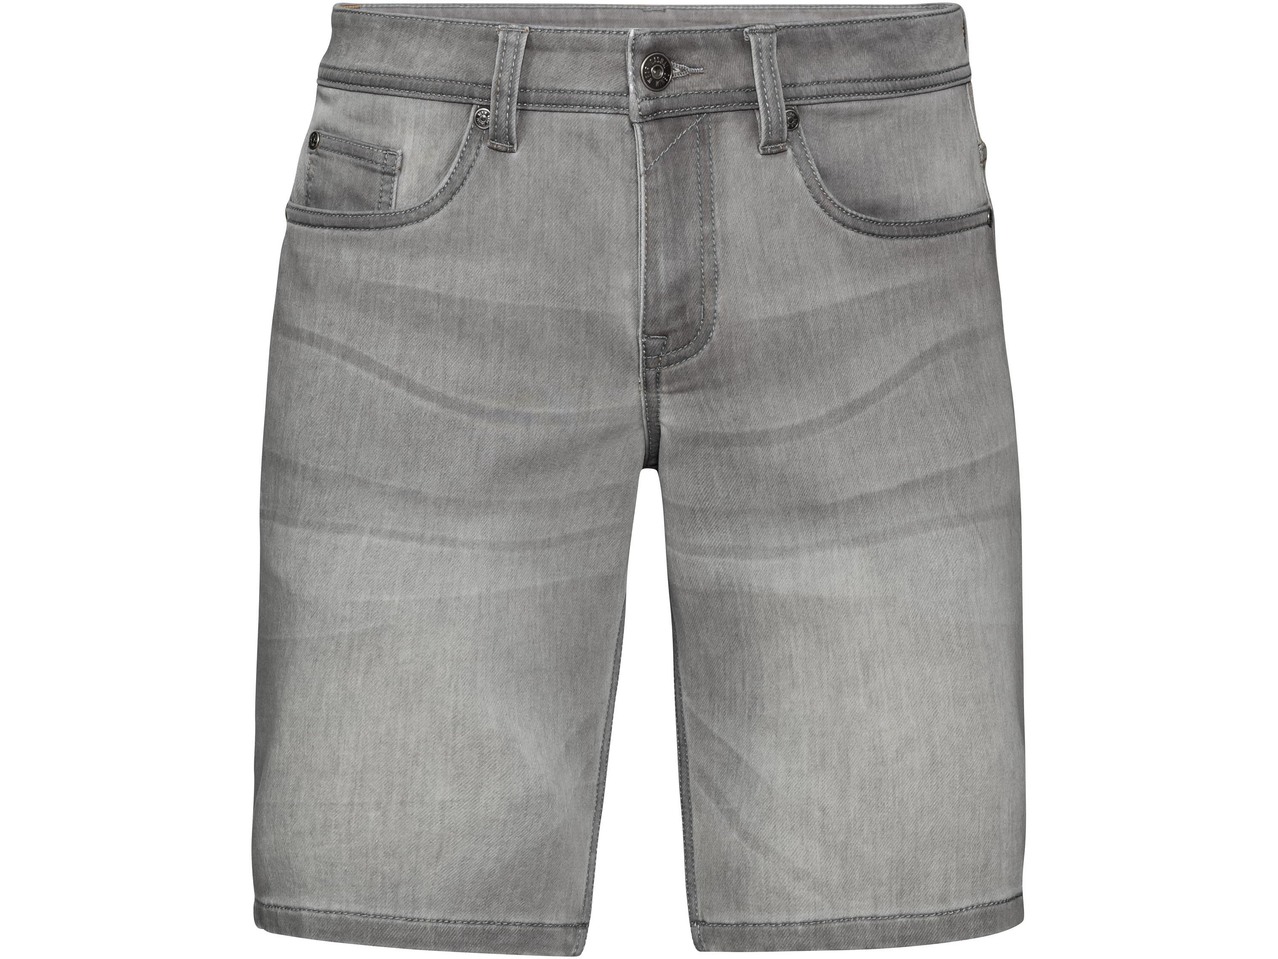 Men's Denim Sweat Shorts